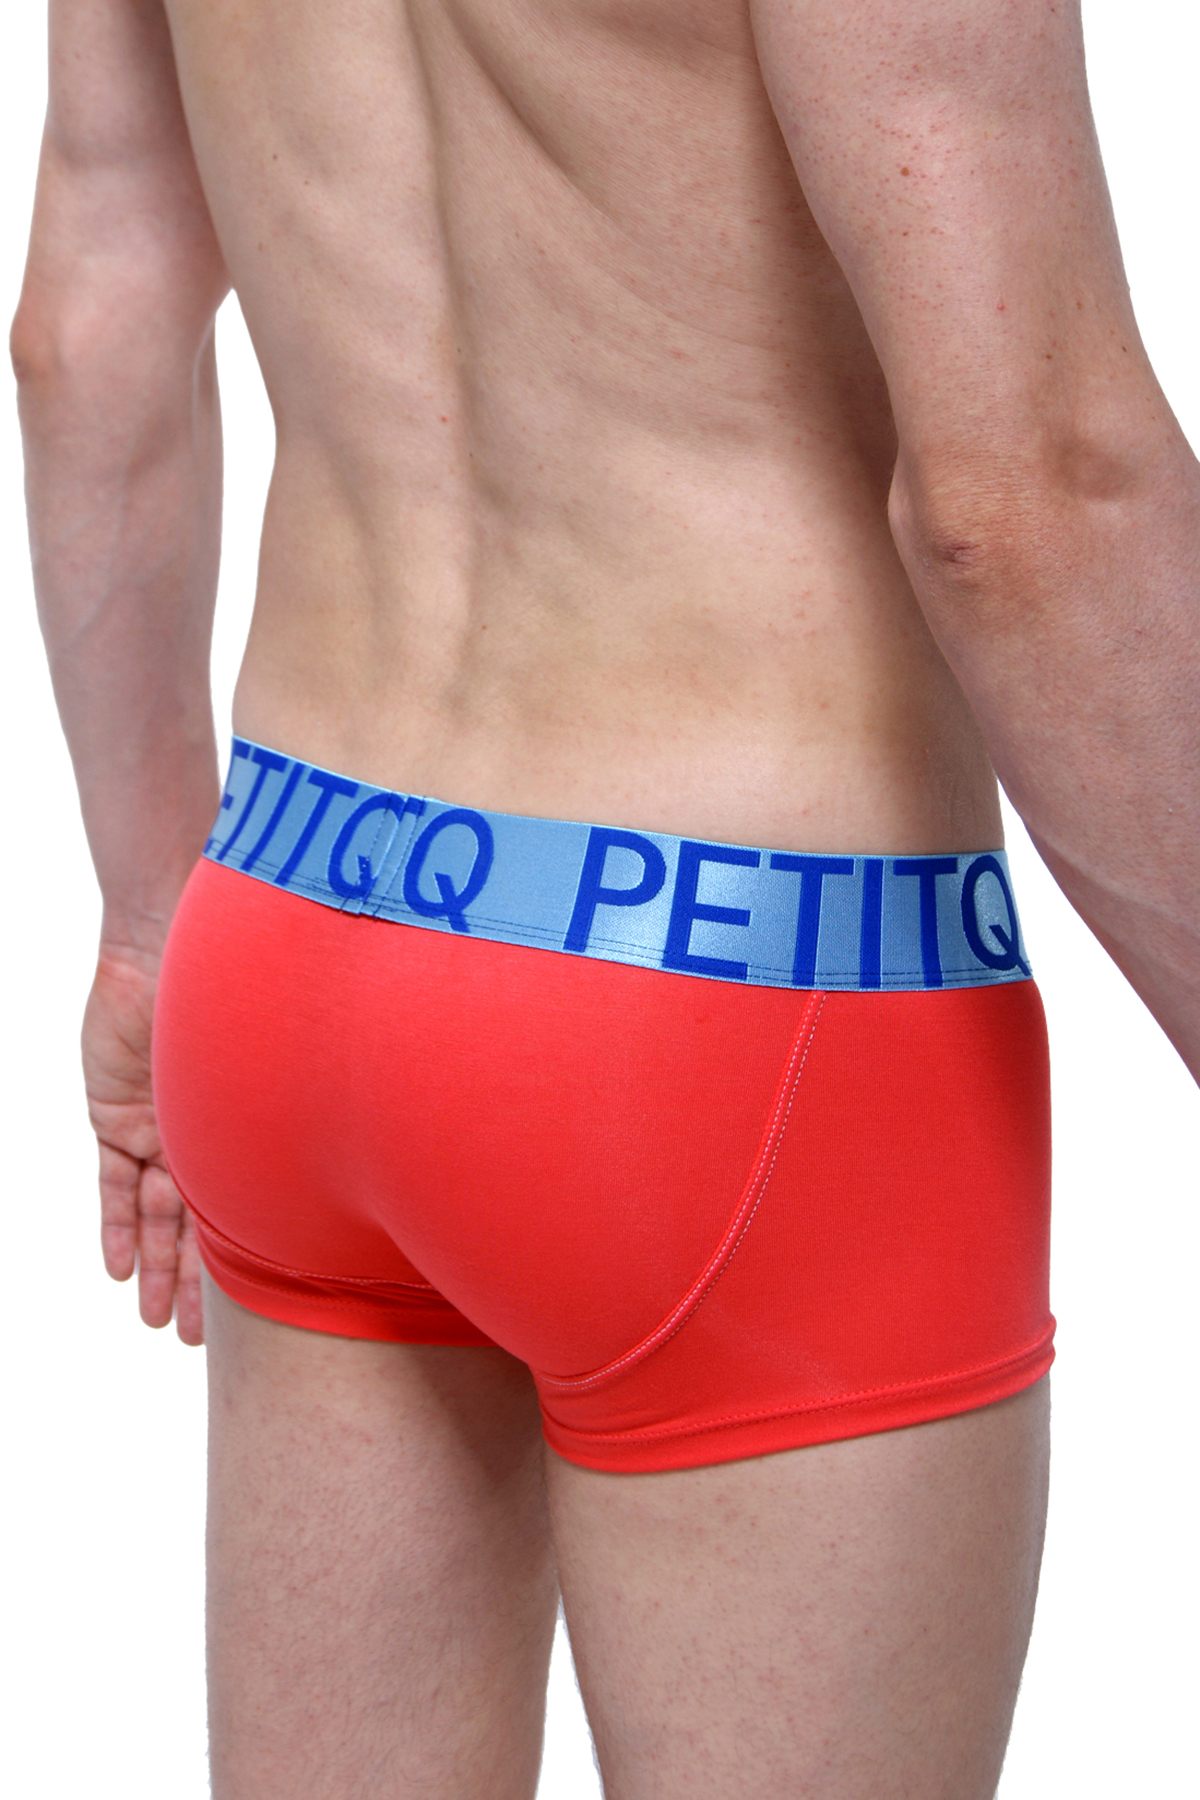 PetitQ Red/Blue Mega Bulge Trunk